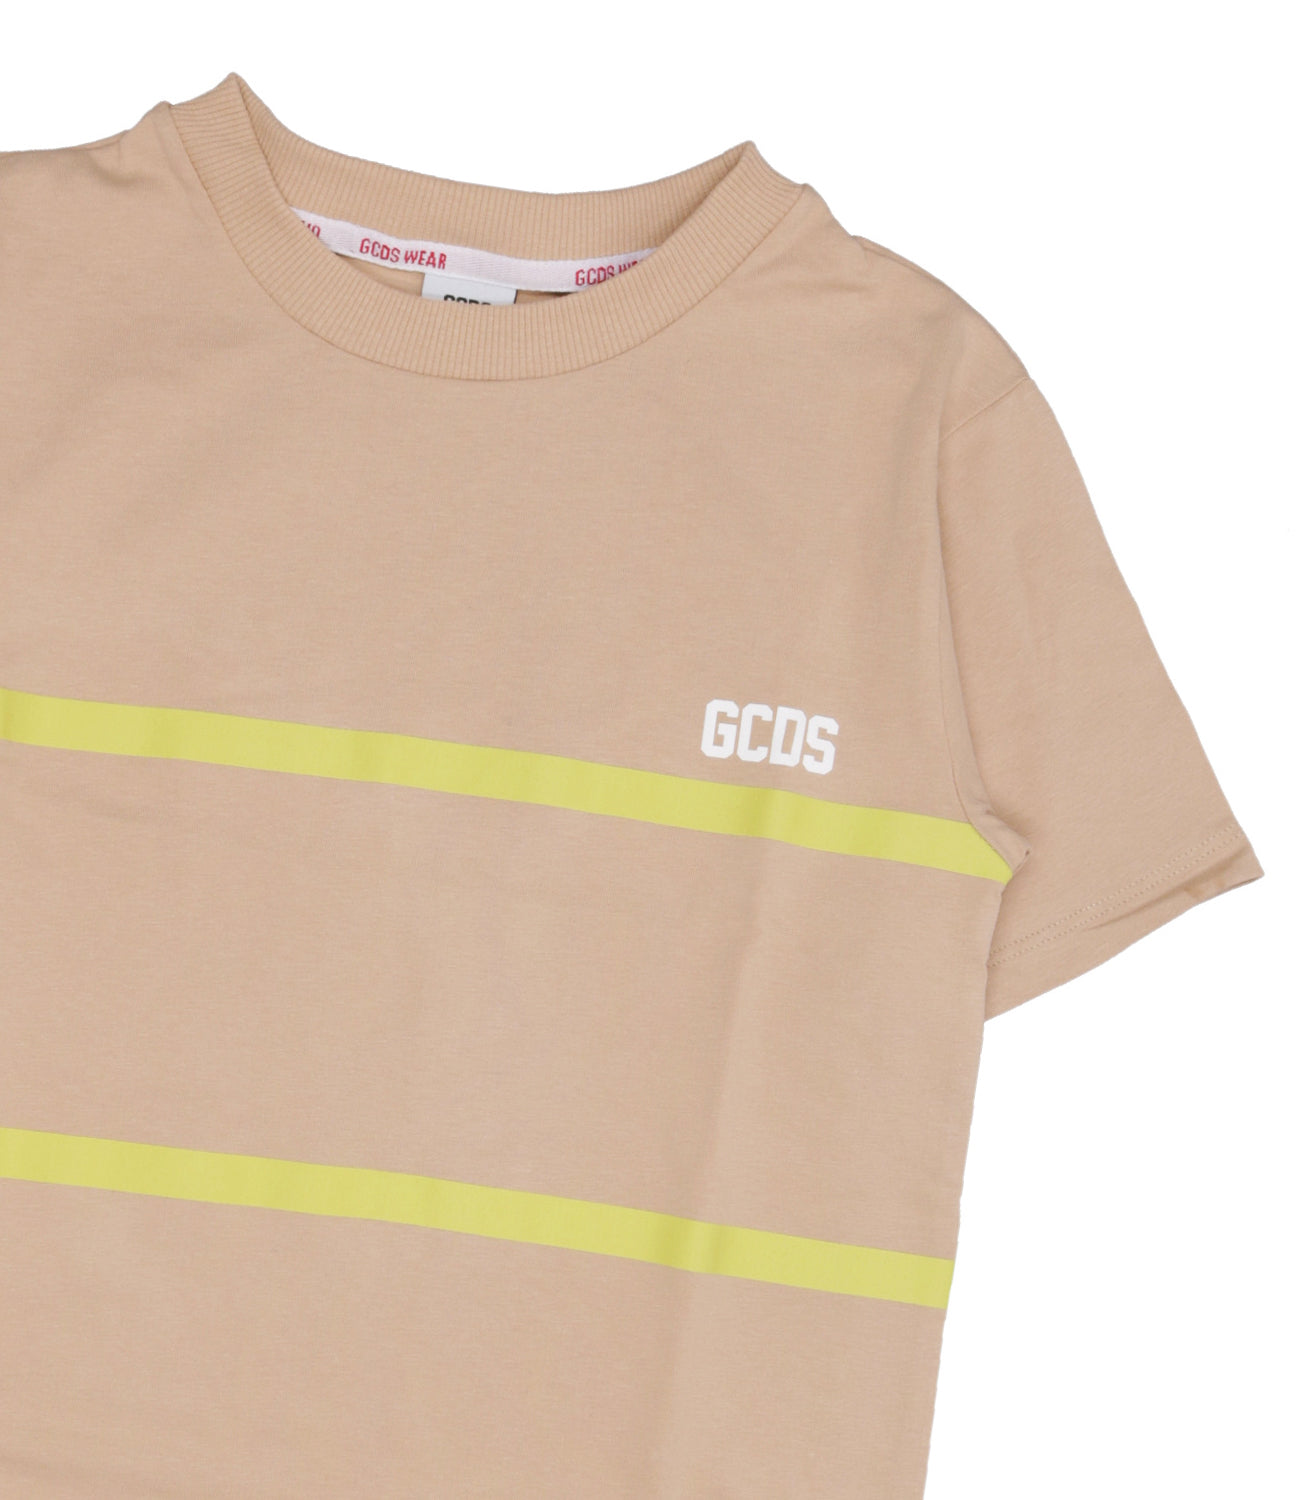 GCDS Junior | Sand T.shirt